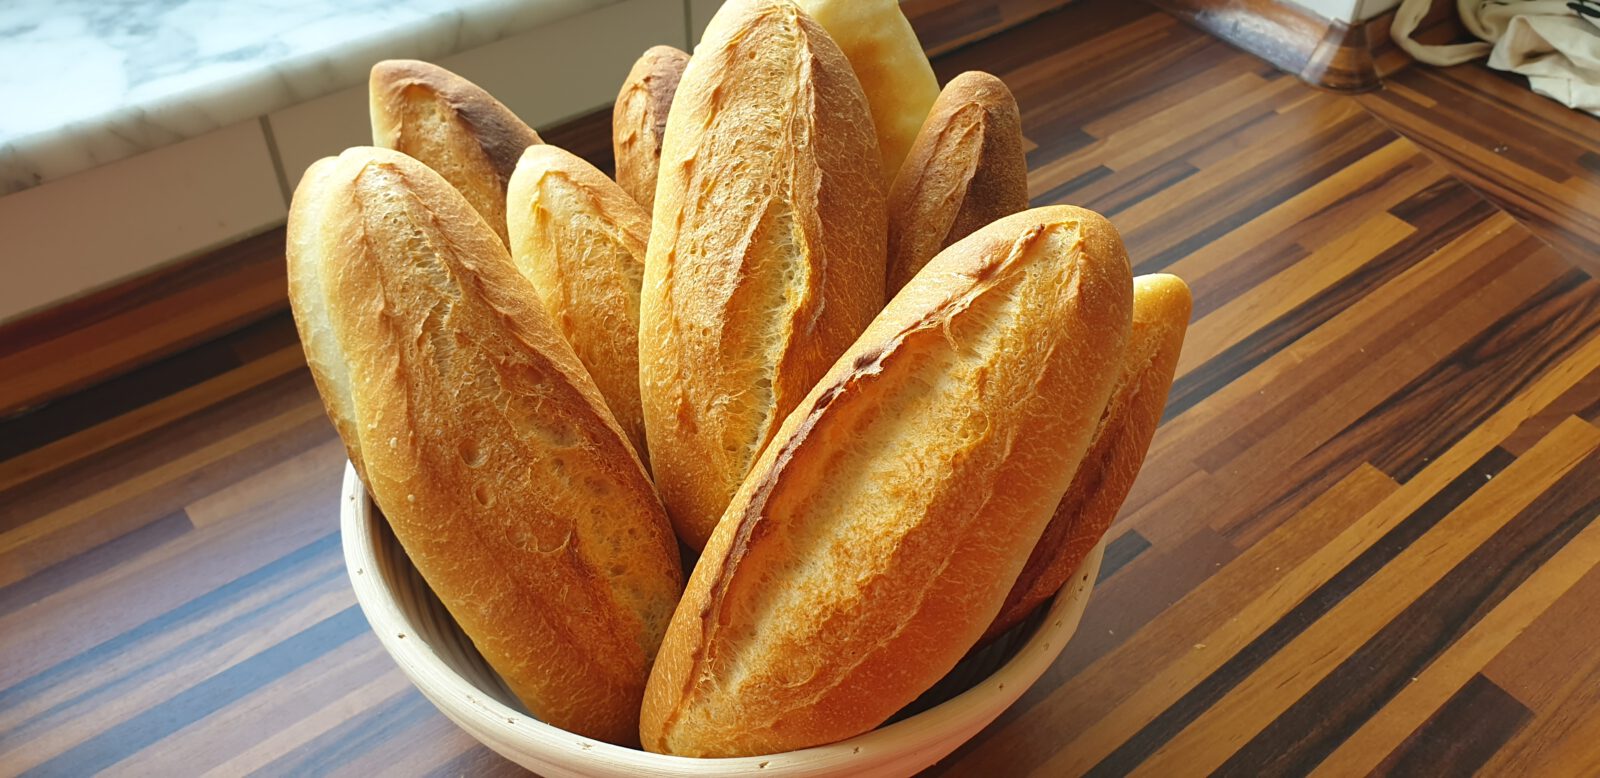 Receta de pan francés casero – fácil y paso a paso – Por amor al horno